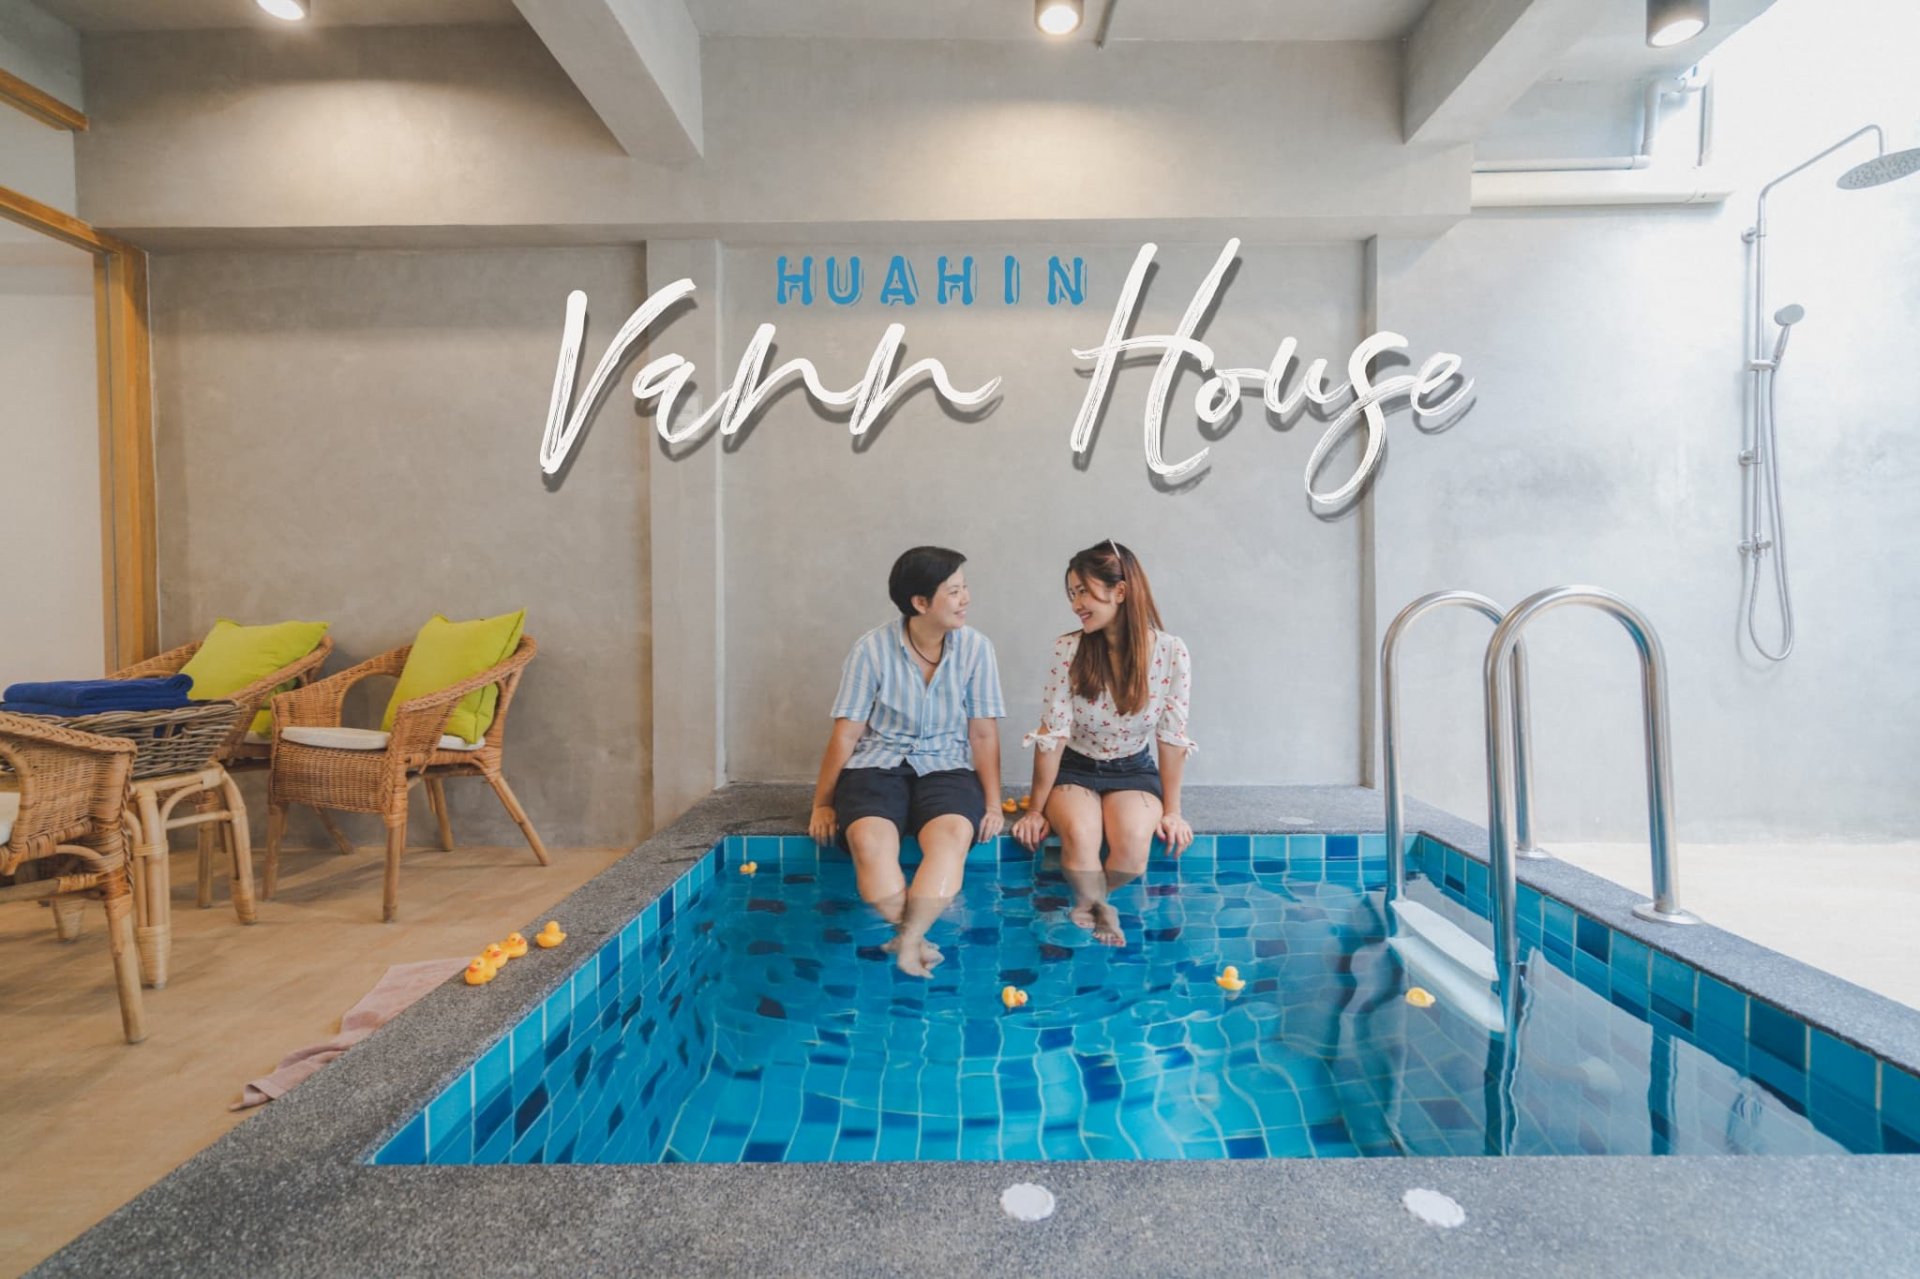 Vann House Huahin บ้านพักในสไตล์ Airbnb ที่คุ้มมาก ๆ ราคาเริ่มต้นเพียง 4,500 บ.เท่านั้น!!!! พักได้ 8 คน สบาย ๆ